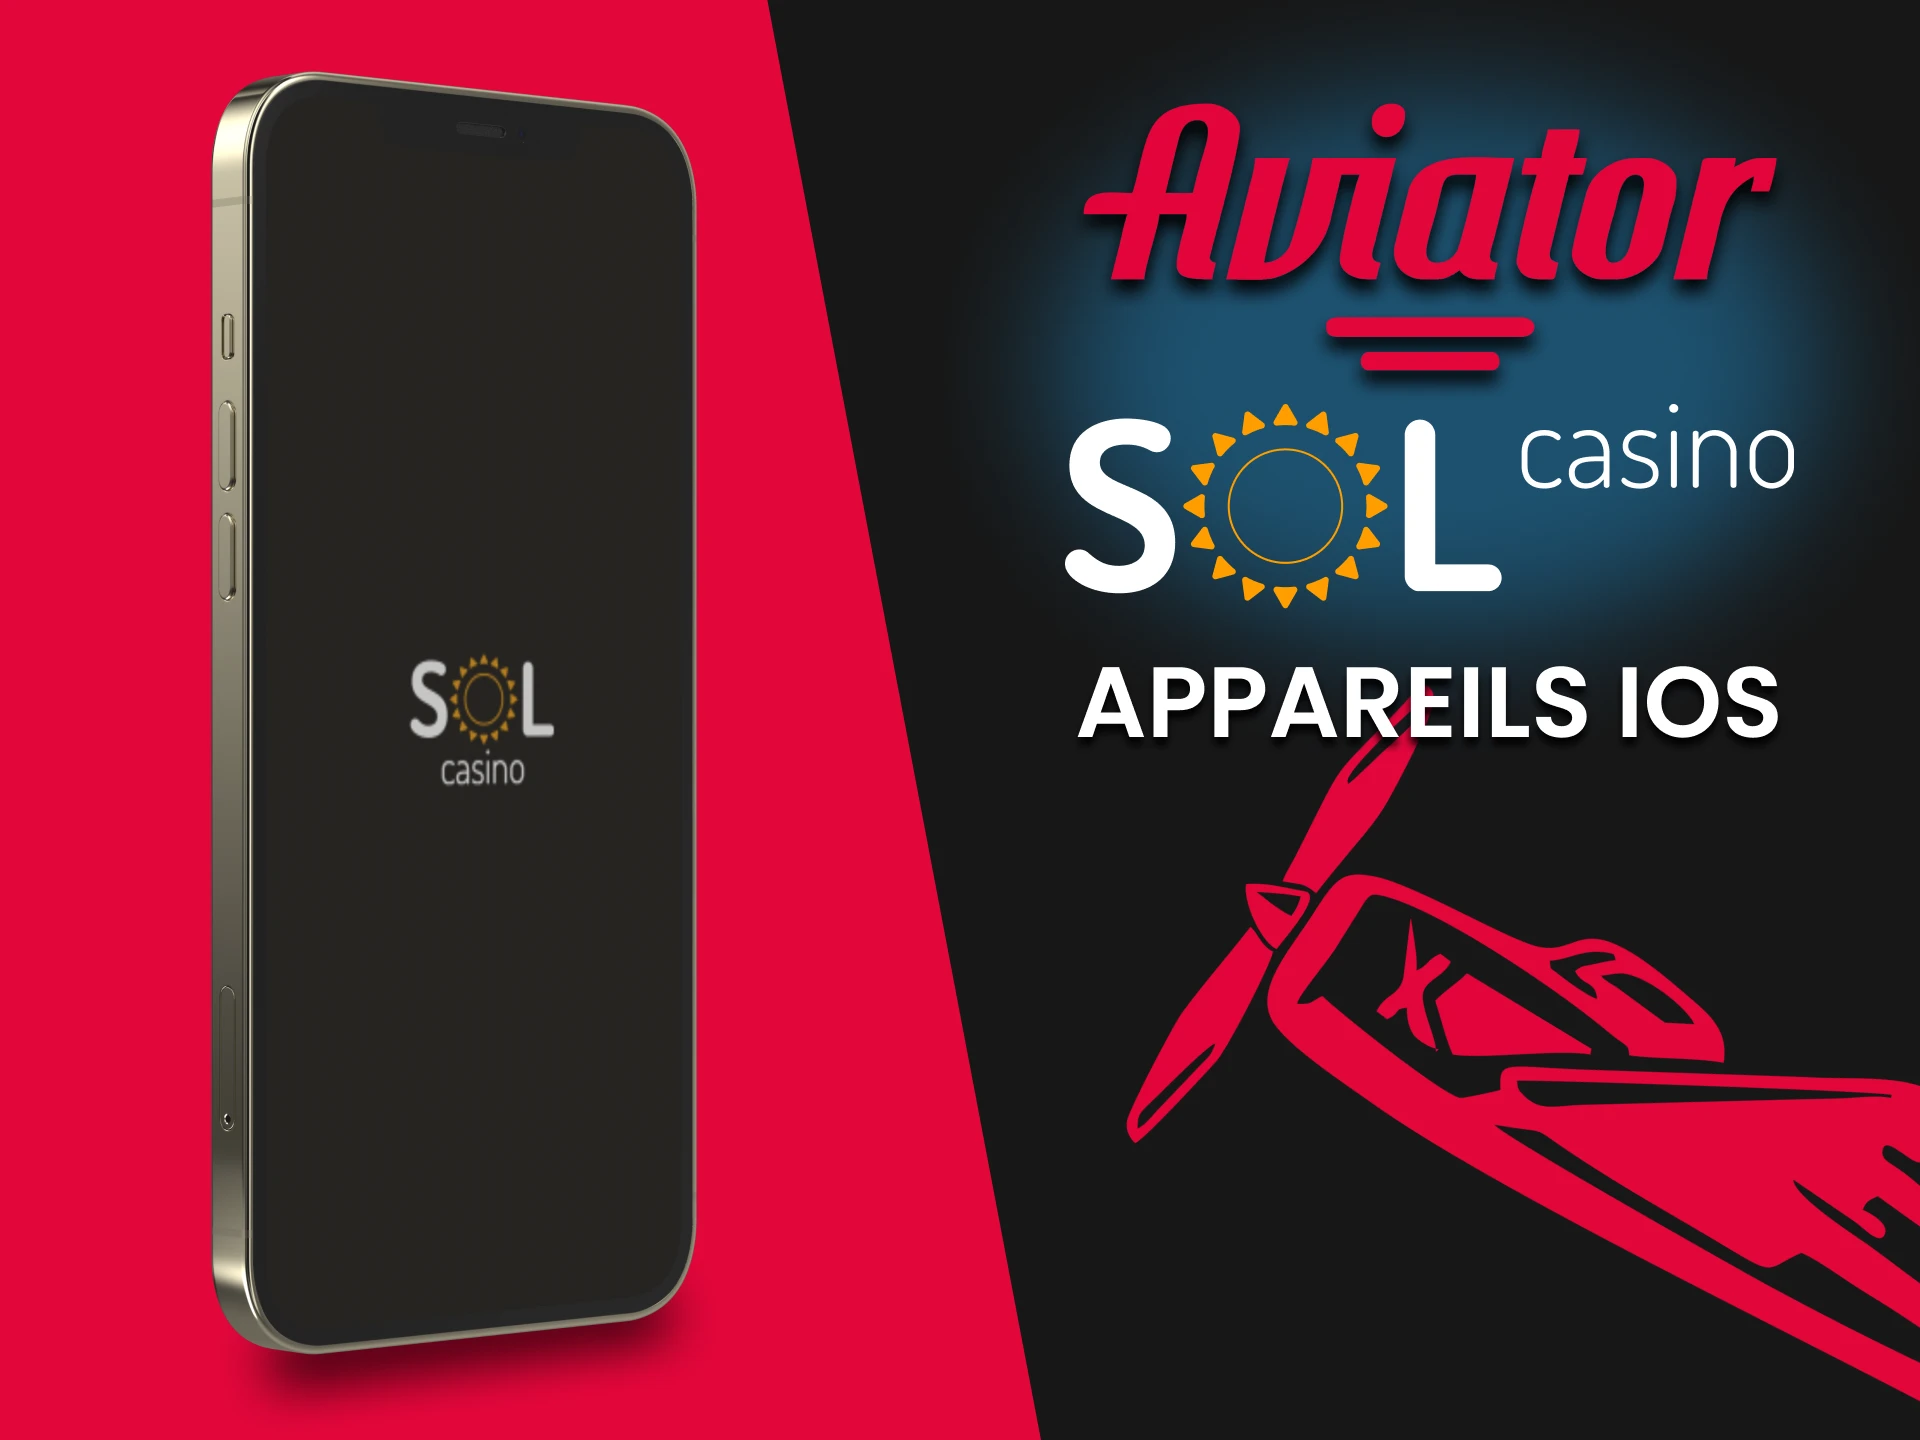 Installez l'application Sol Casino pour jouer à Aviator sur les appareils iOS.